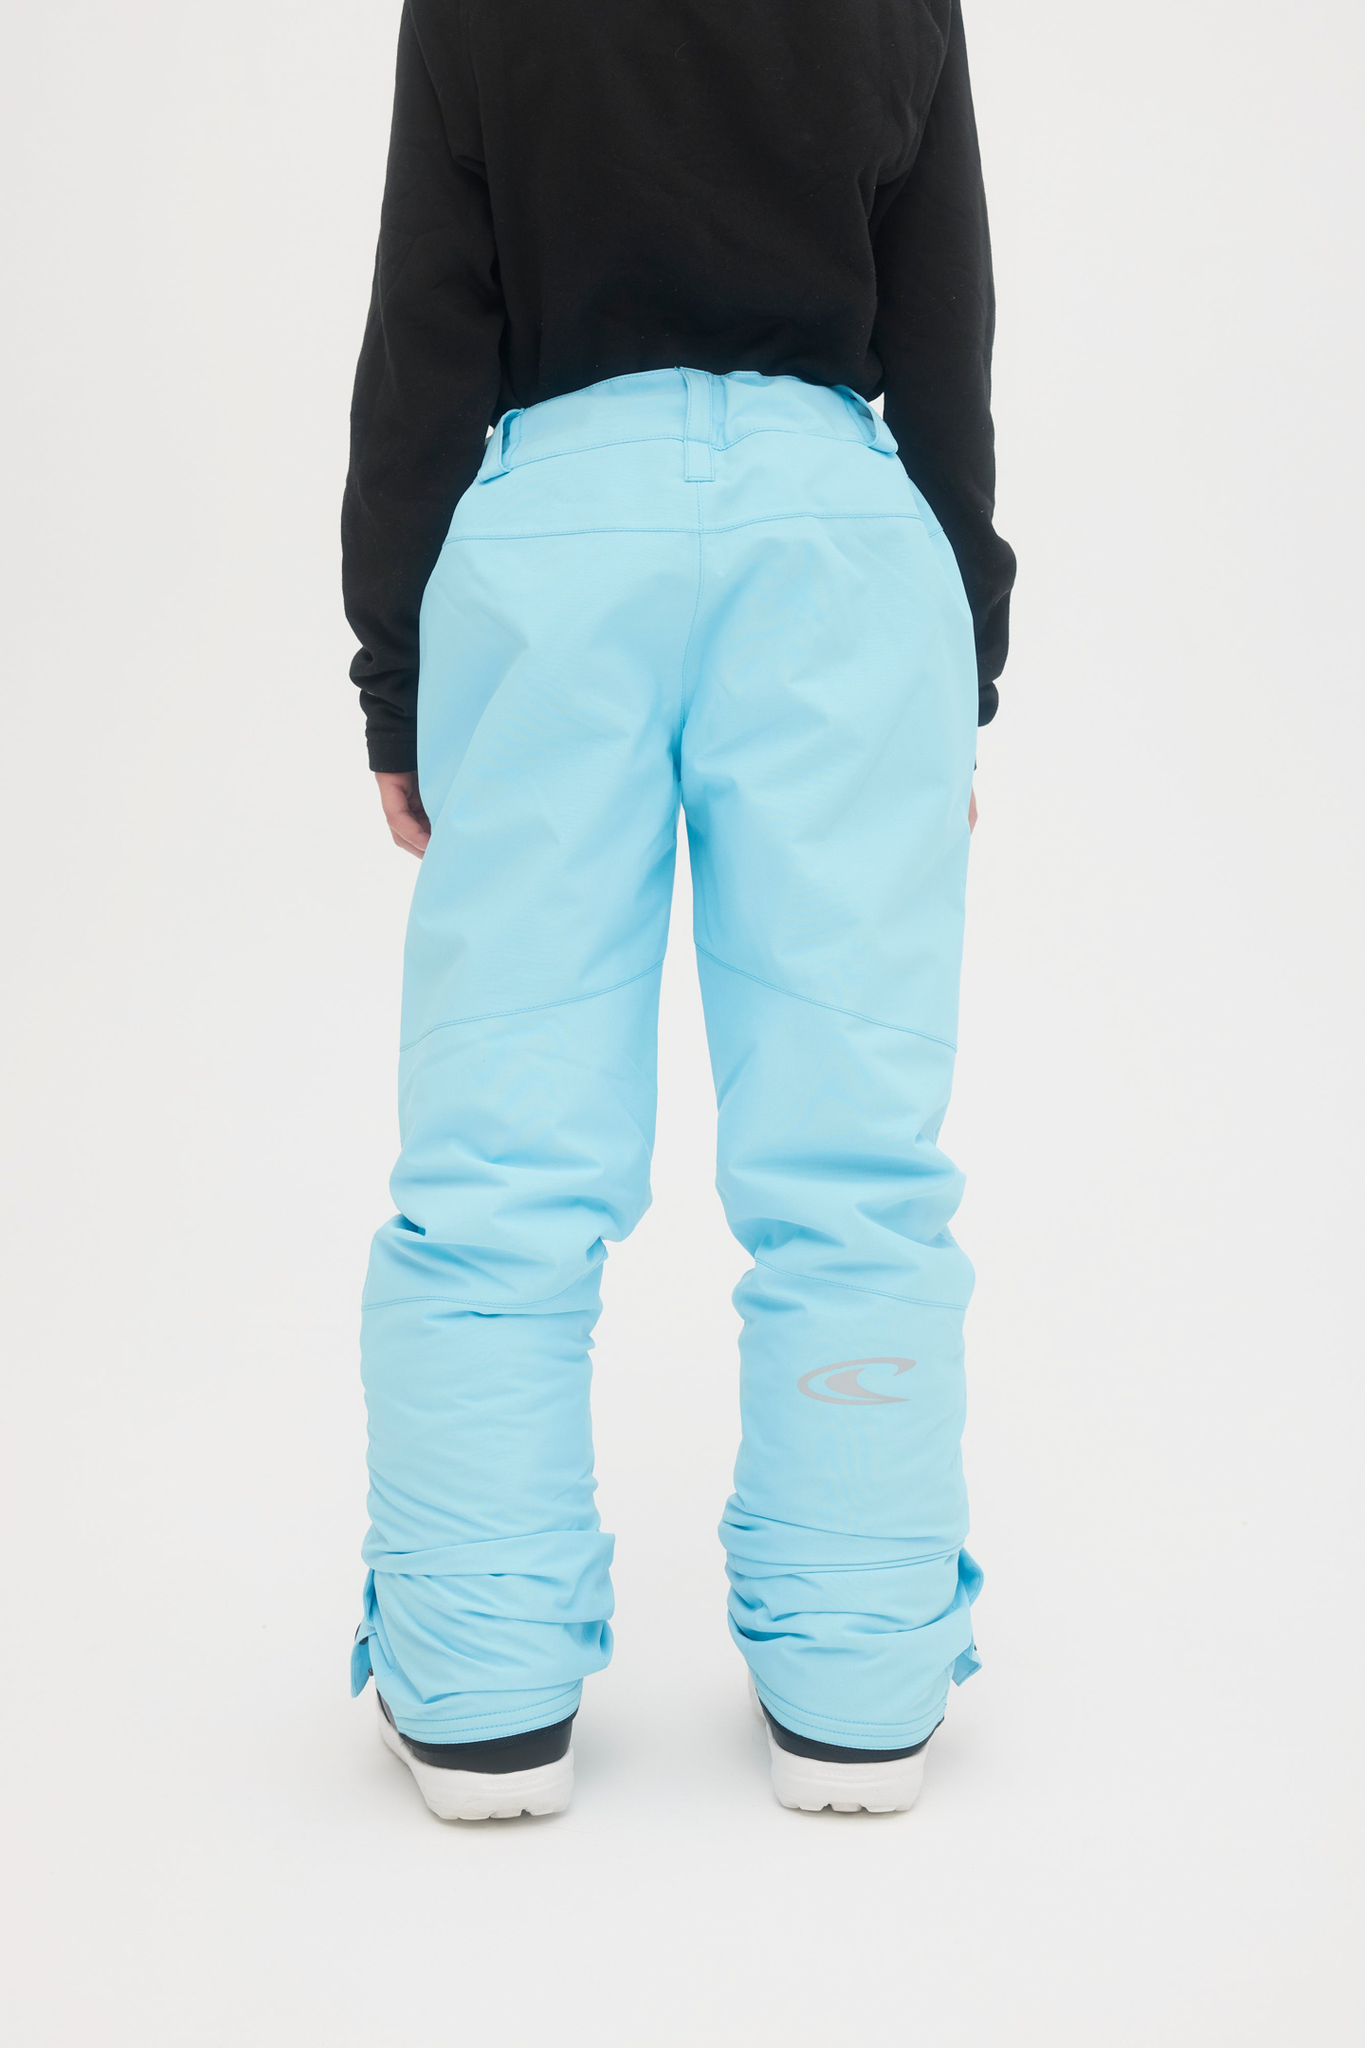 Roxy Backyard Pant - Ski trousers Women's, Free EU Delivery